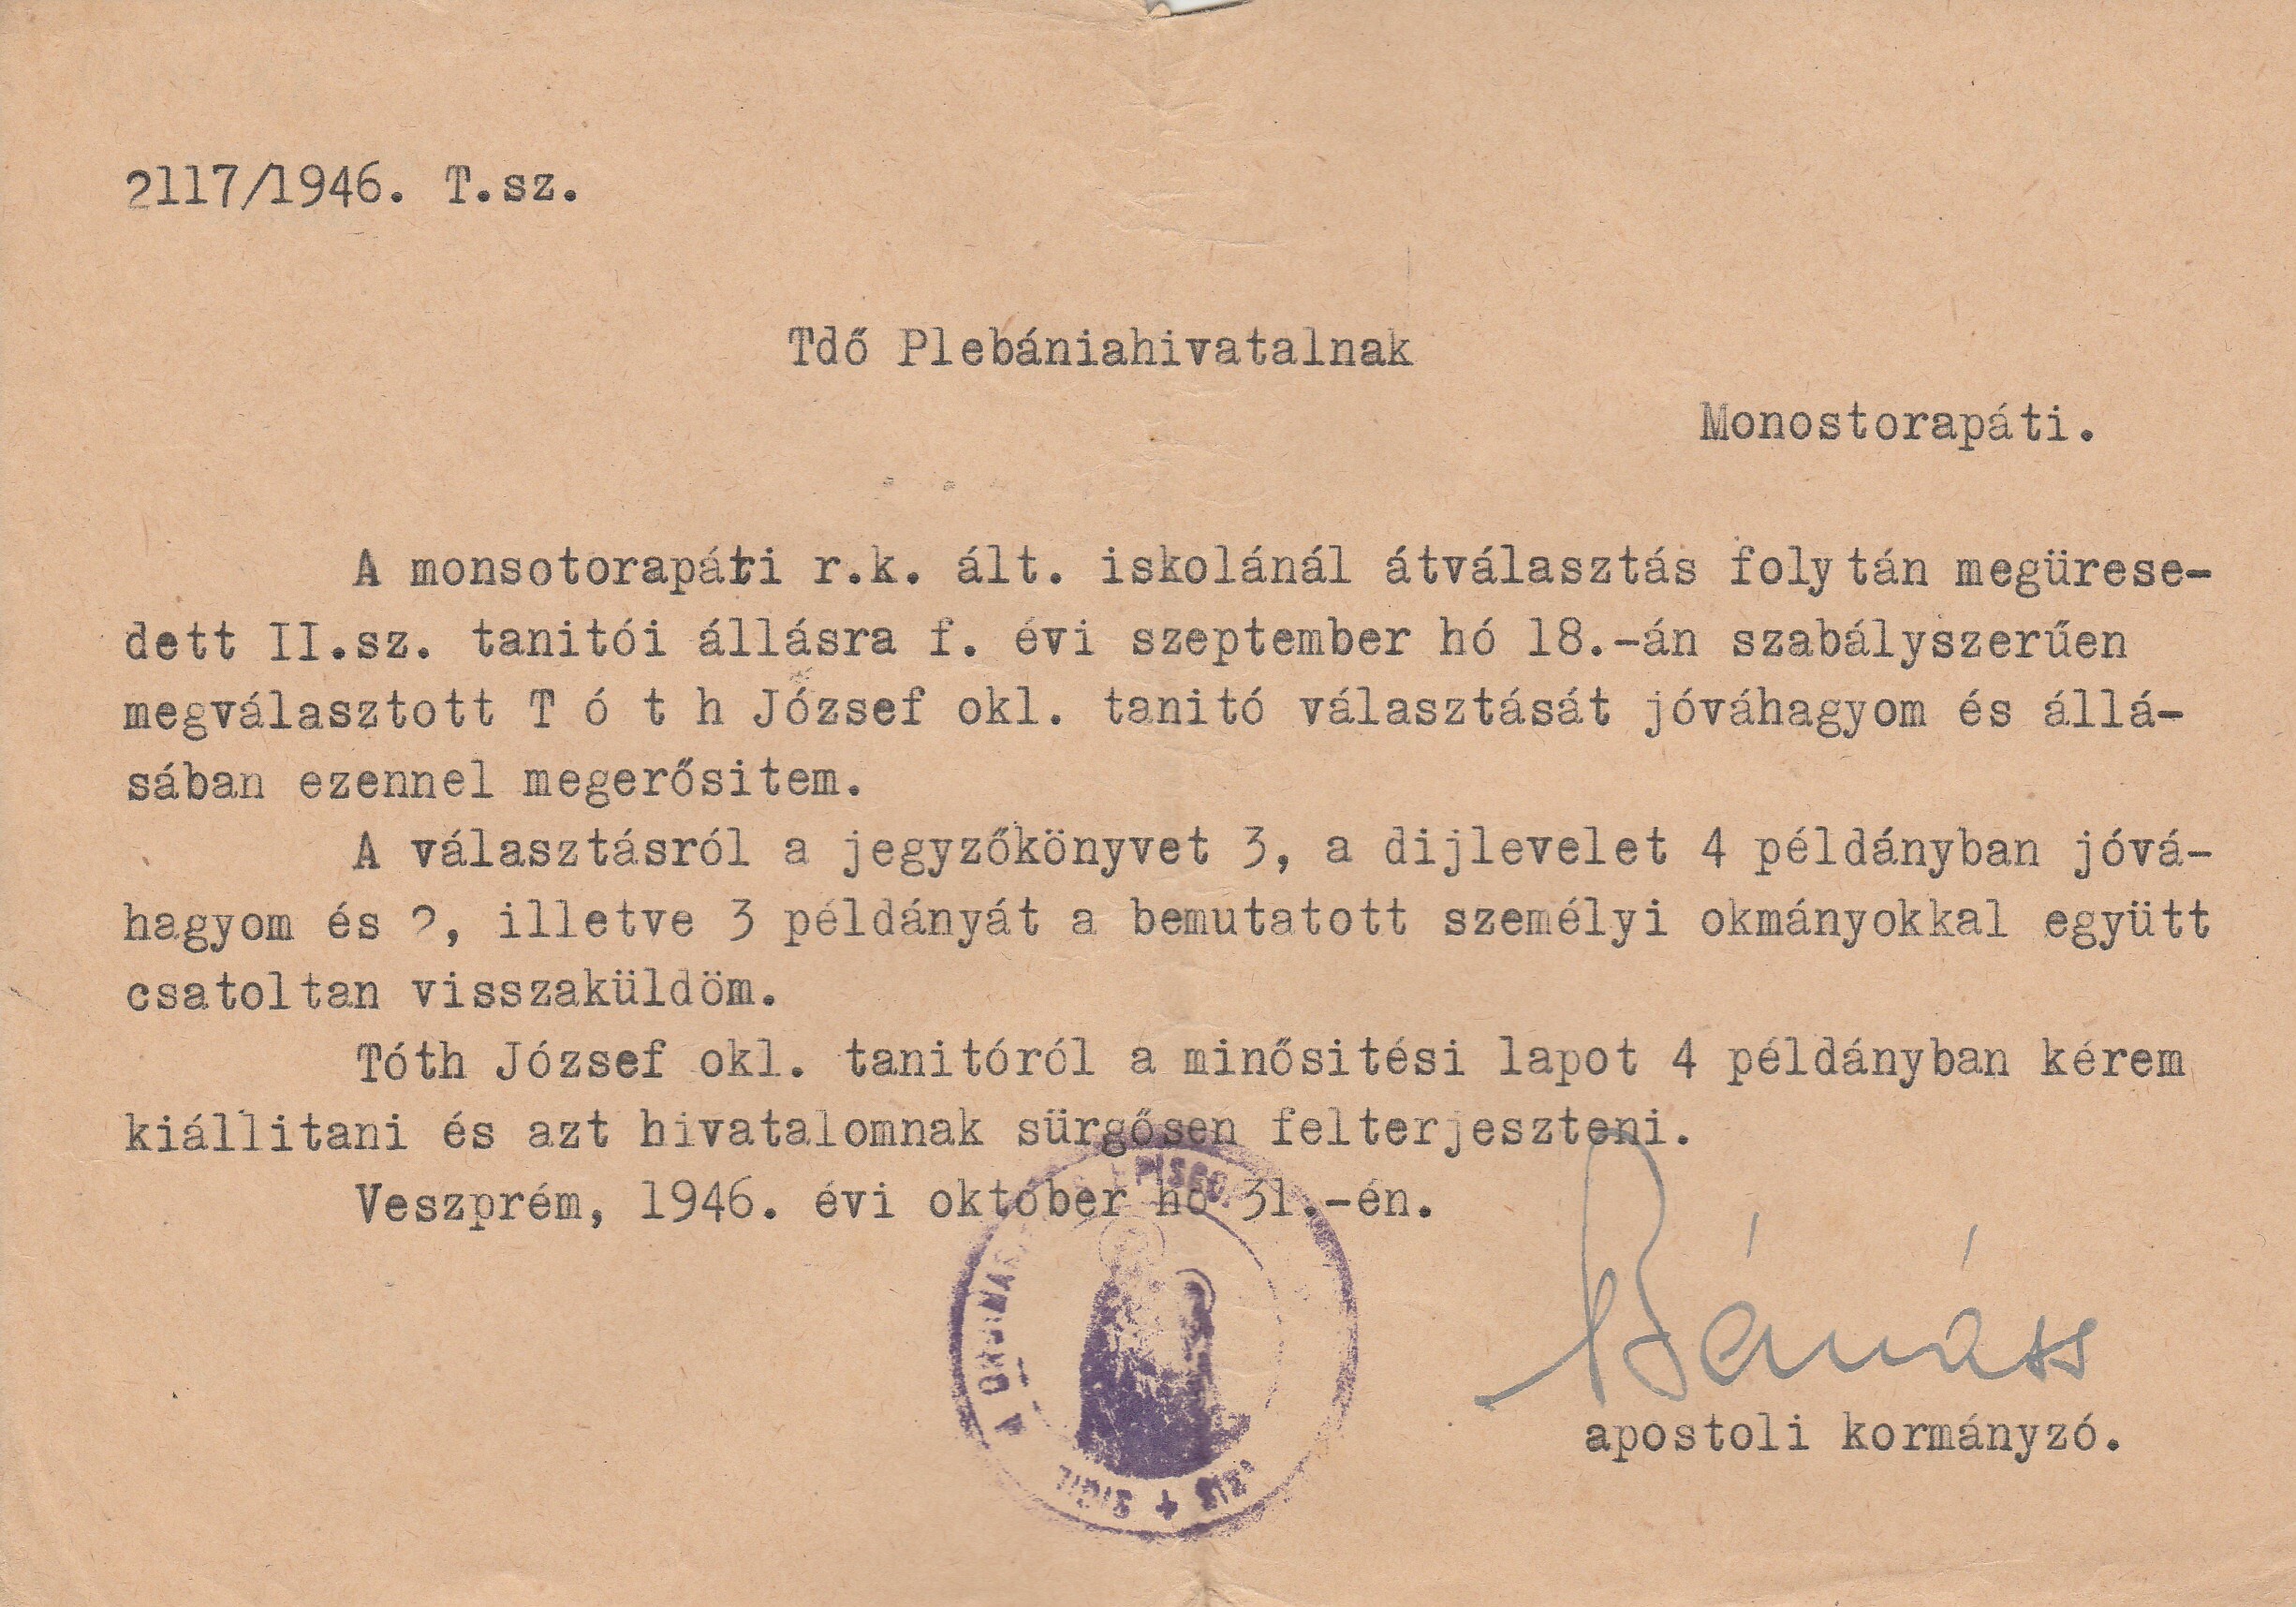 Tóth József monostorapáti tanító kinevezésének jóváhagyása (Tapolcai Városi Múzeum CC BY-NC-SA)